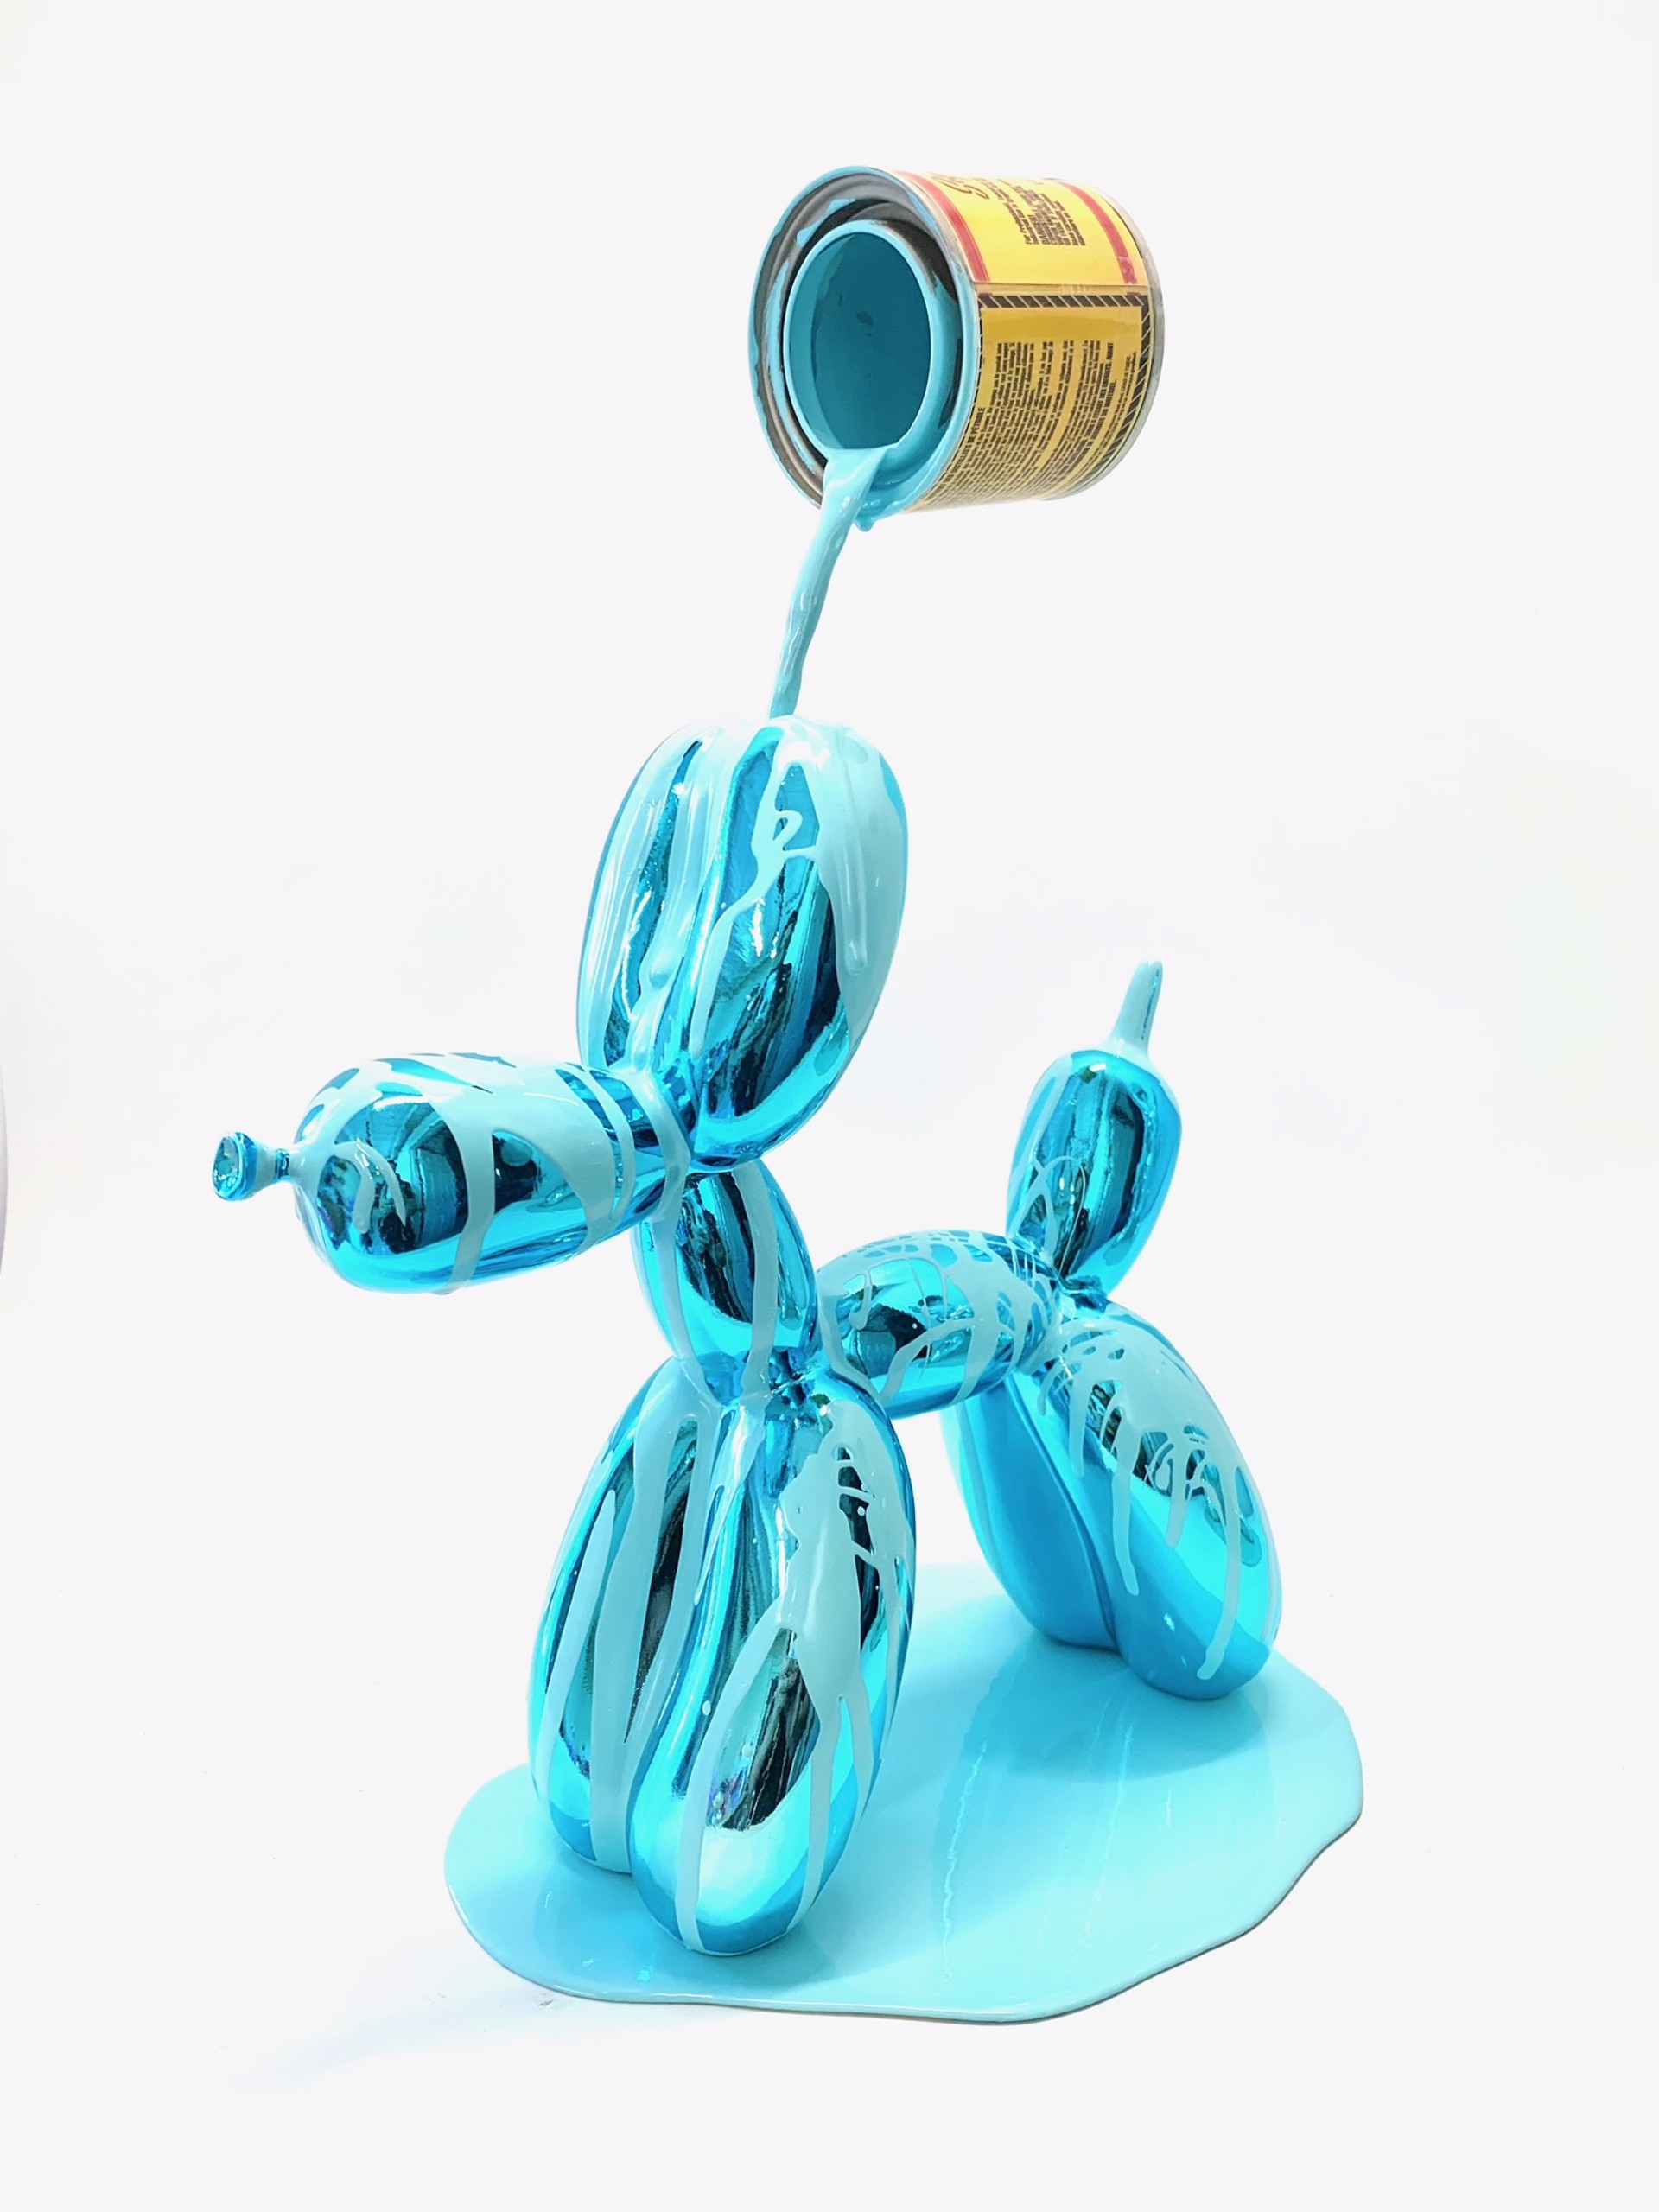 Happy Accident Series - Balloon Dog (blue) by Joe Suzuki